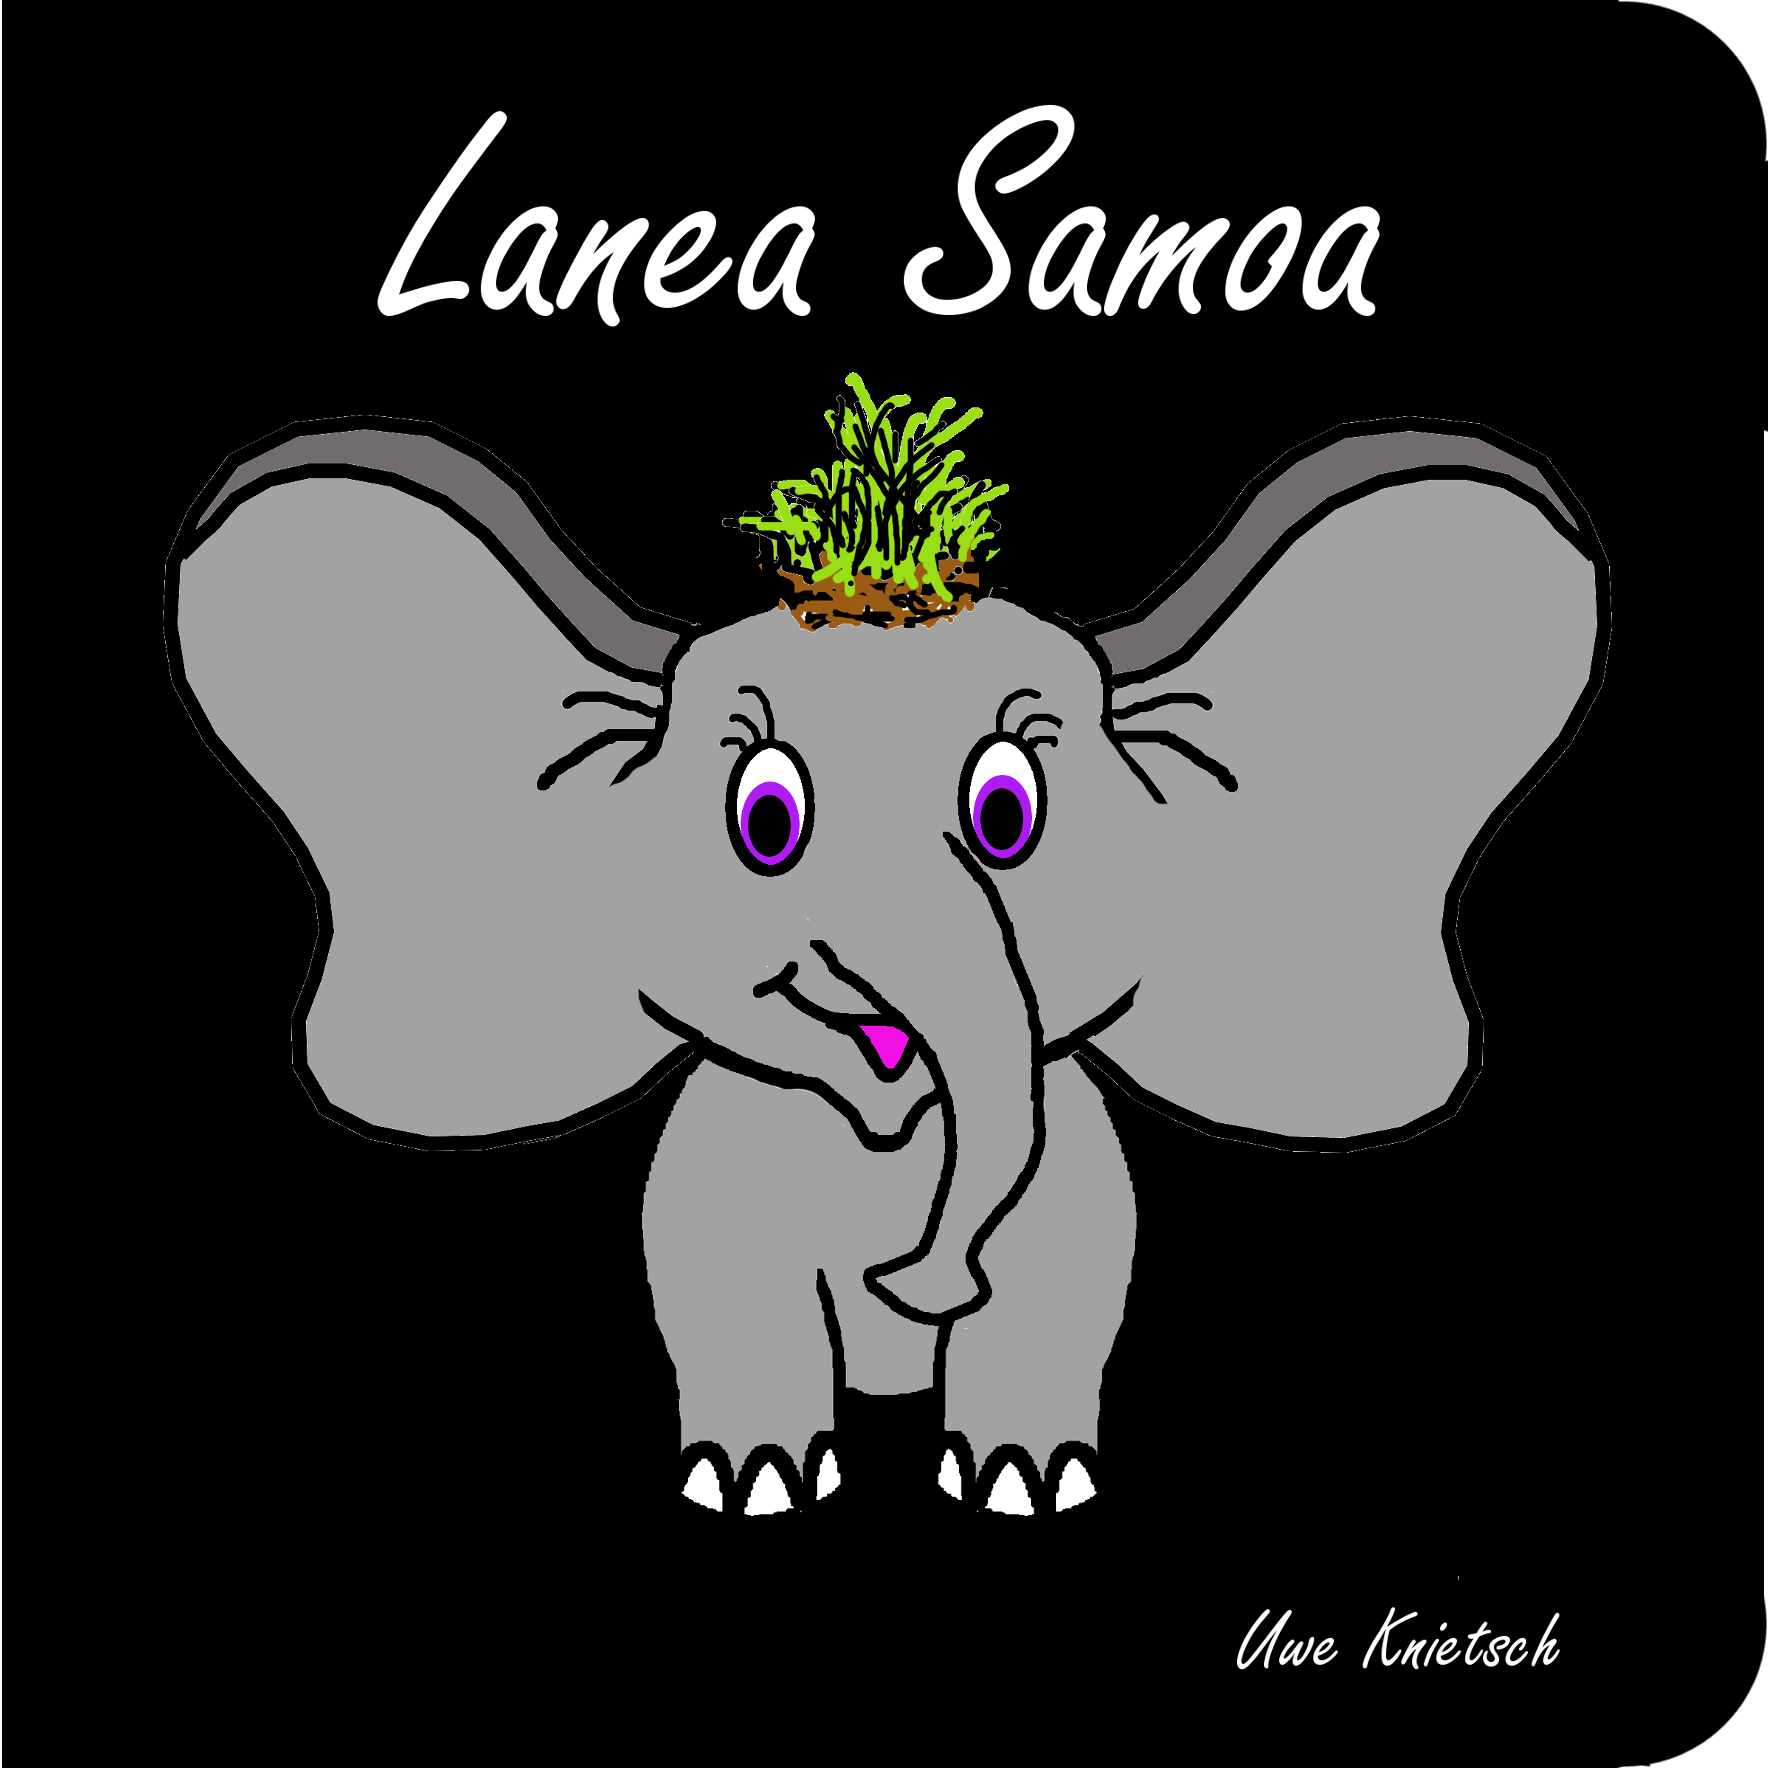 Lanea Samoa - Uwe Knietsch